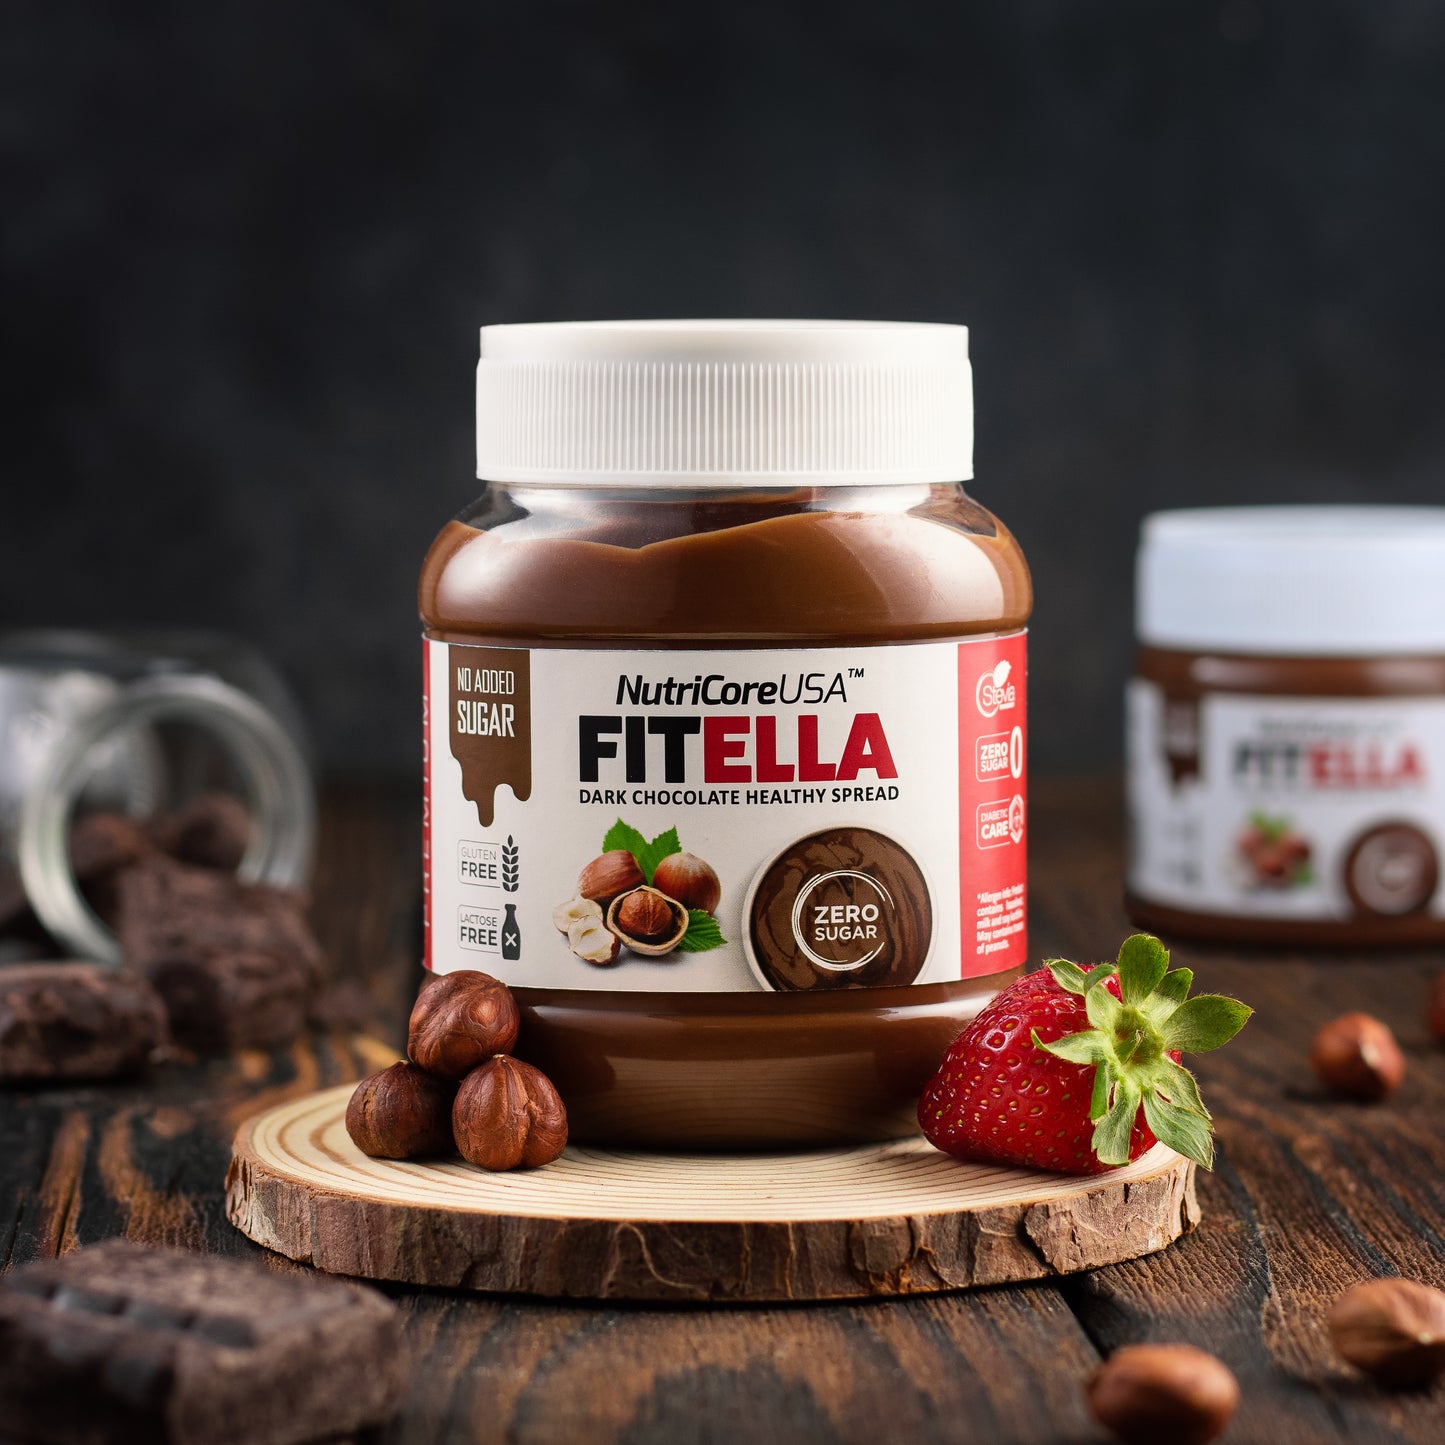 Fitella Max Protein Hazelnut Chocolate spread 350G